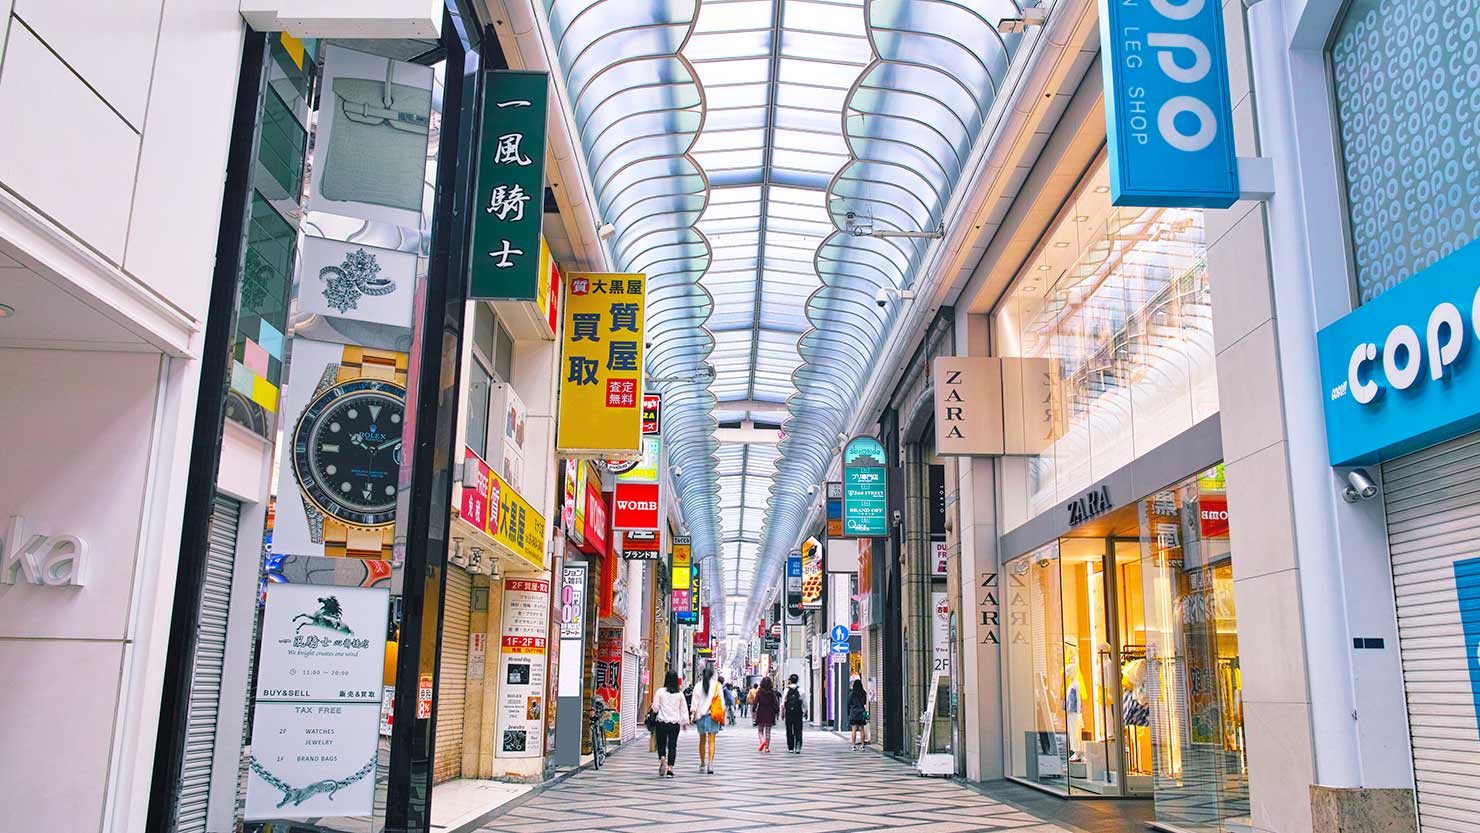 ホームズ 大阪の中心といえば 人情とトレンド溢れる心斎橋筋商店街で暮らそう 暮らし方から物件探し